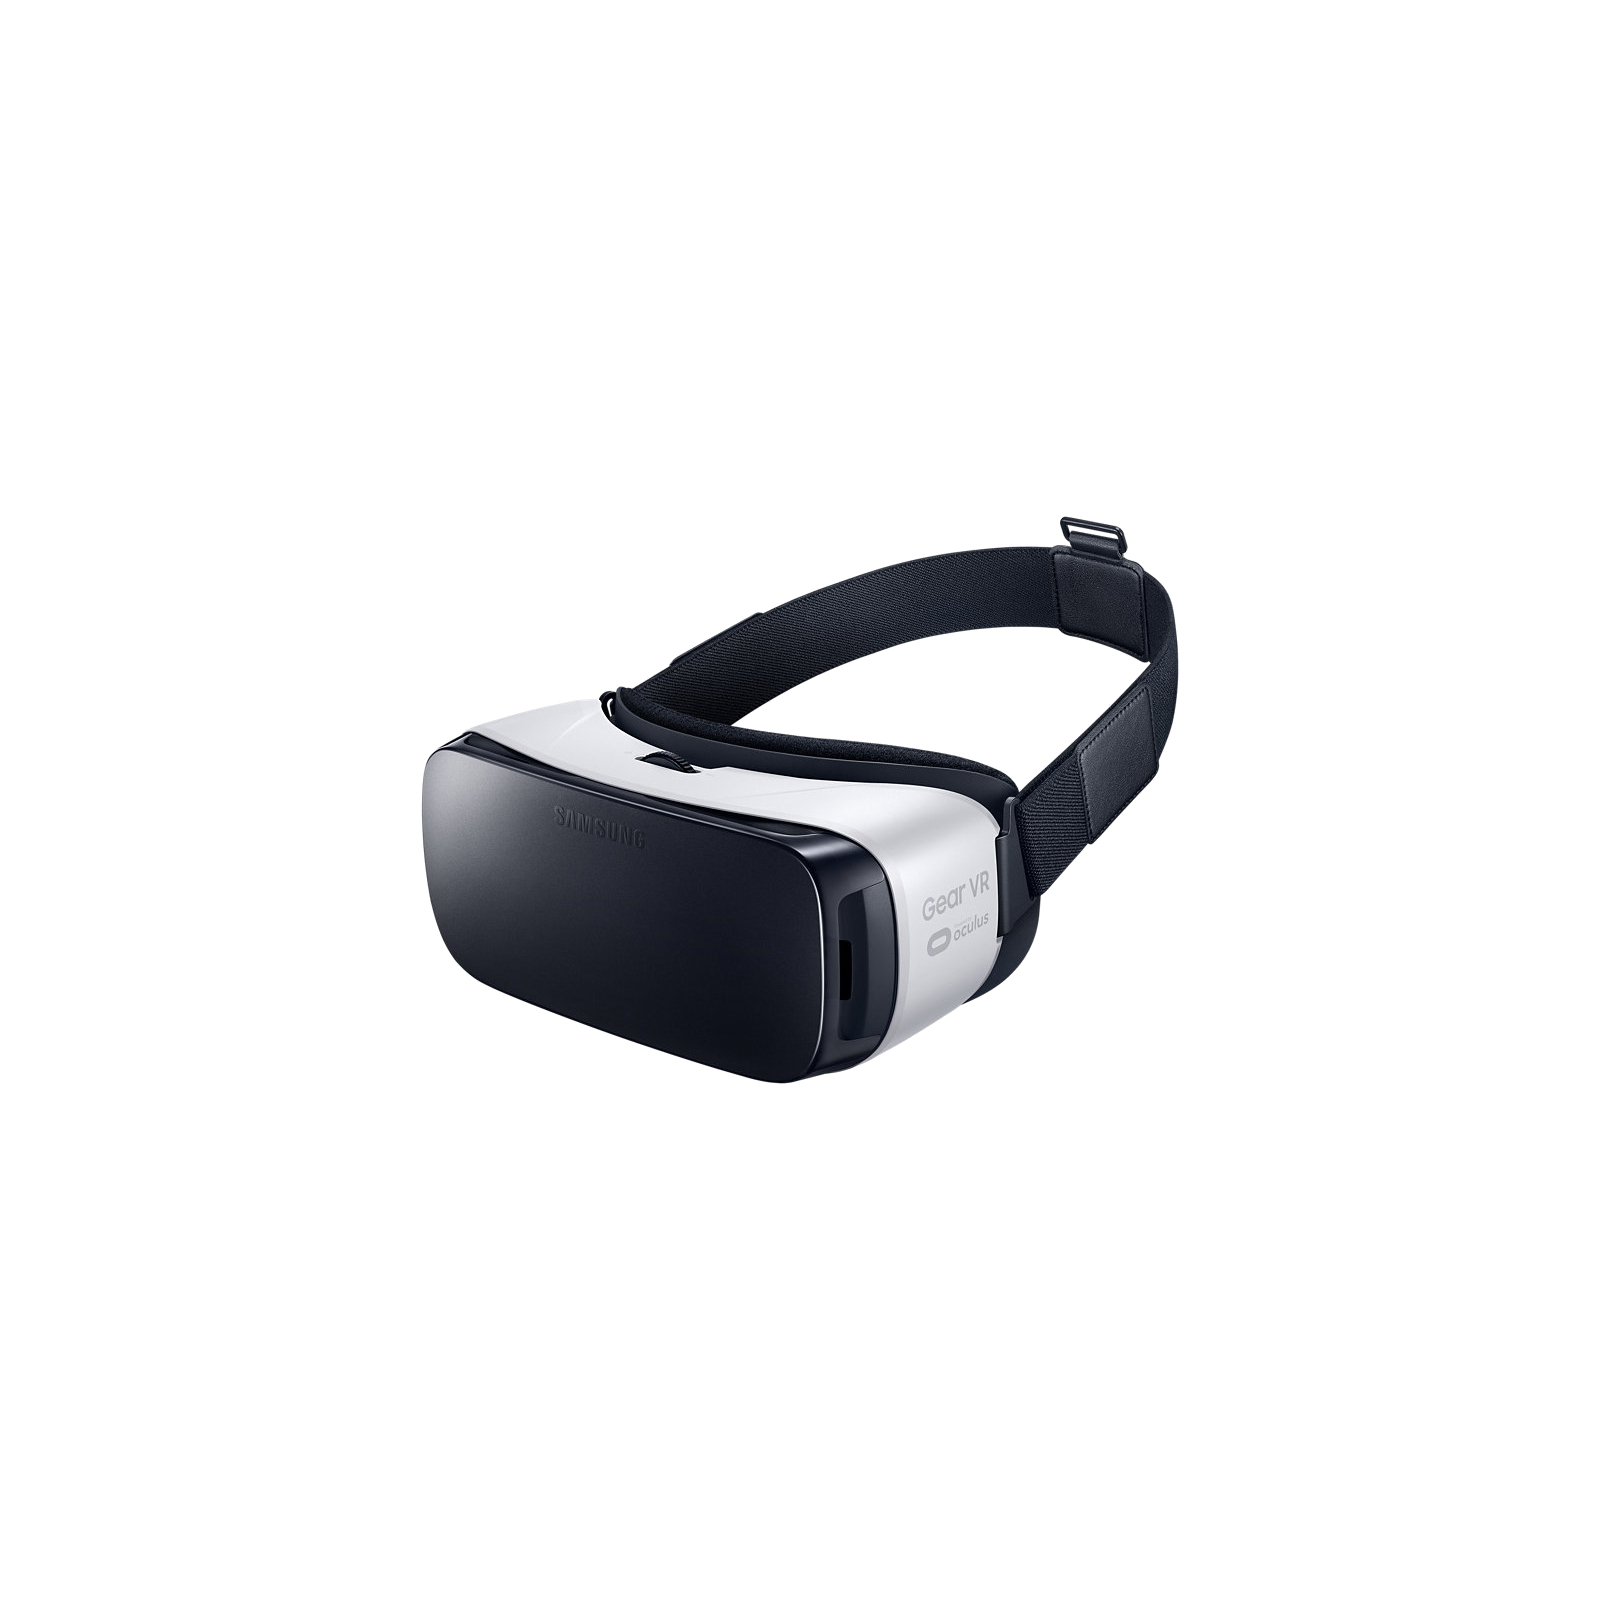 Очки виртуальной реальности Samsung VR CE (SM-R322NZWASEK)